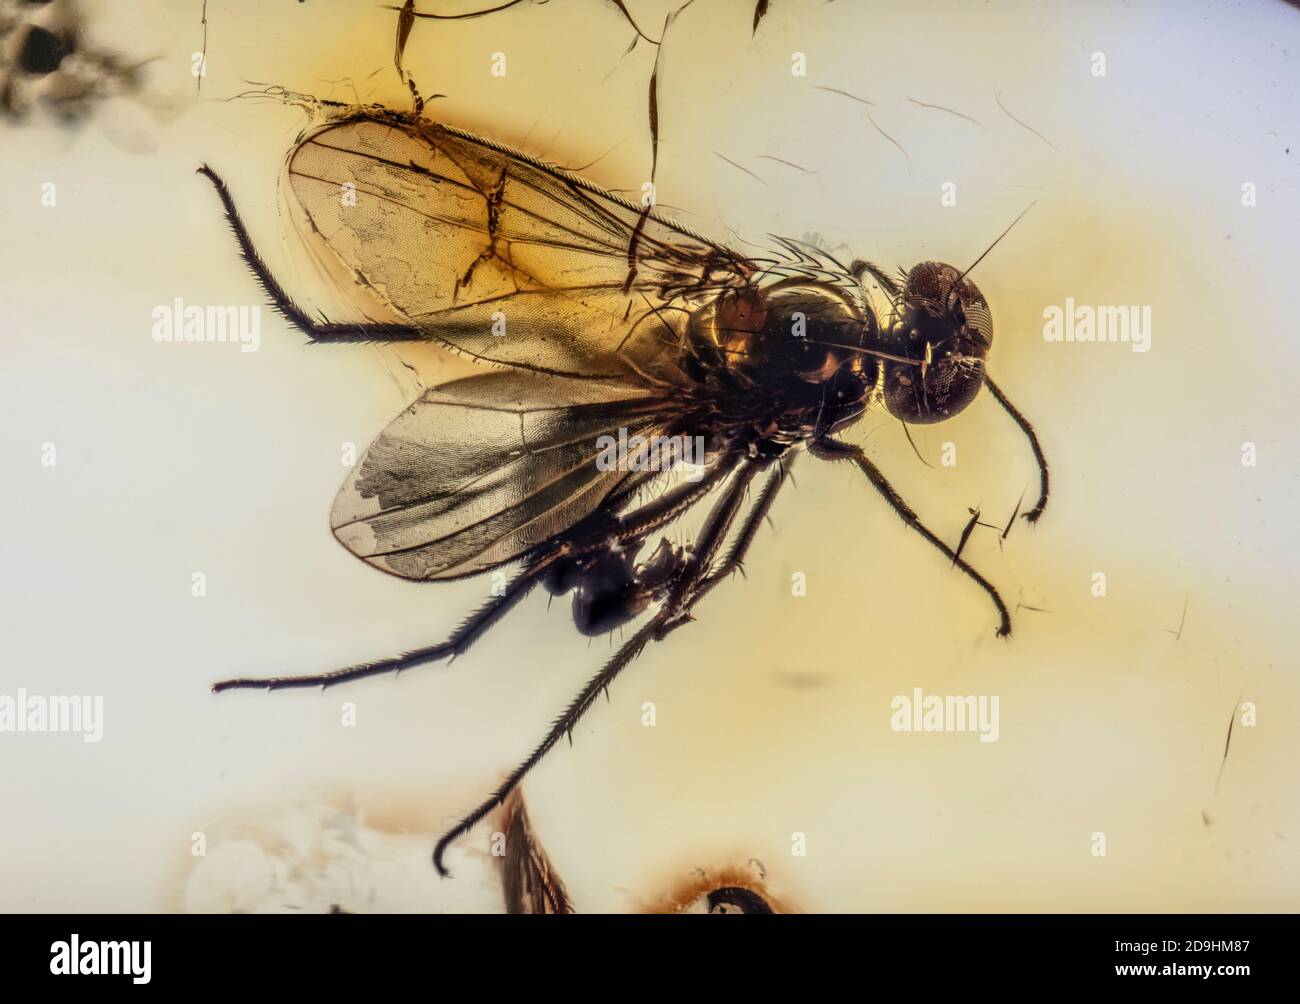 Preservado para las edades, la mosca de las piernas largas, Dolichopodidae, atrapado en el ámbar Báltico, 40 a 54 millones de años de edad Foto de stock